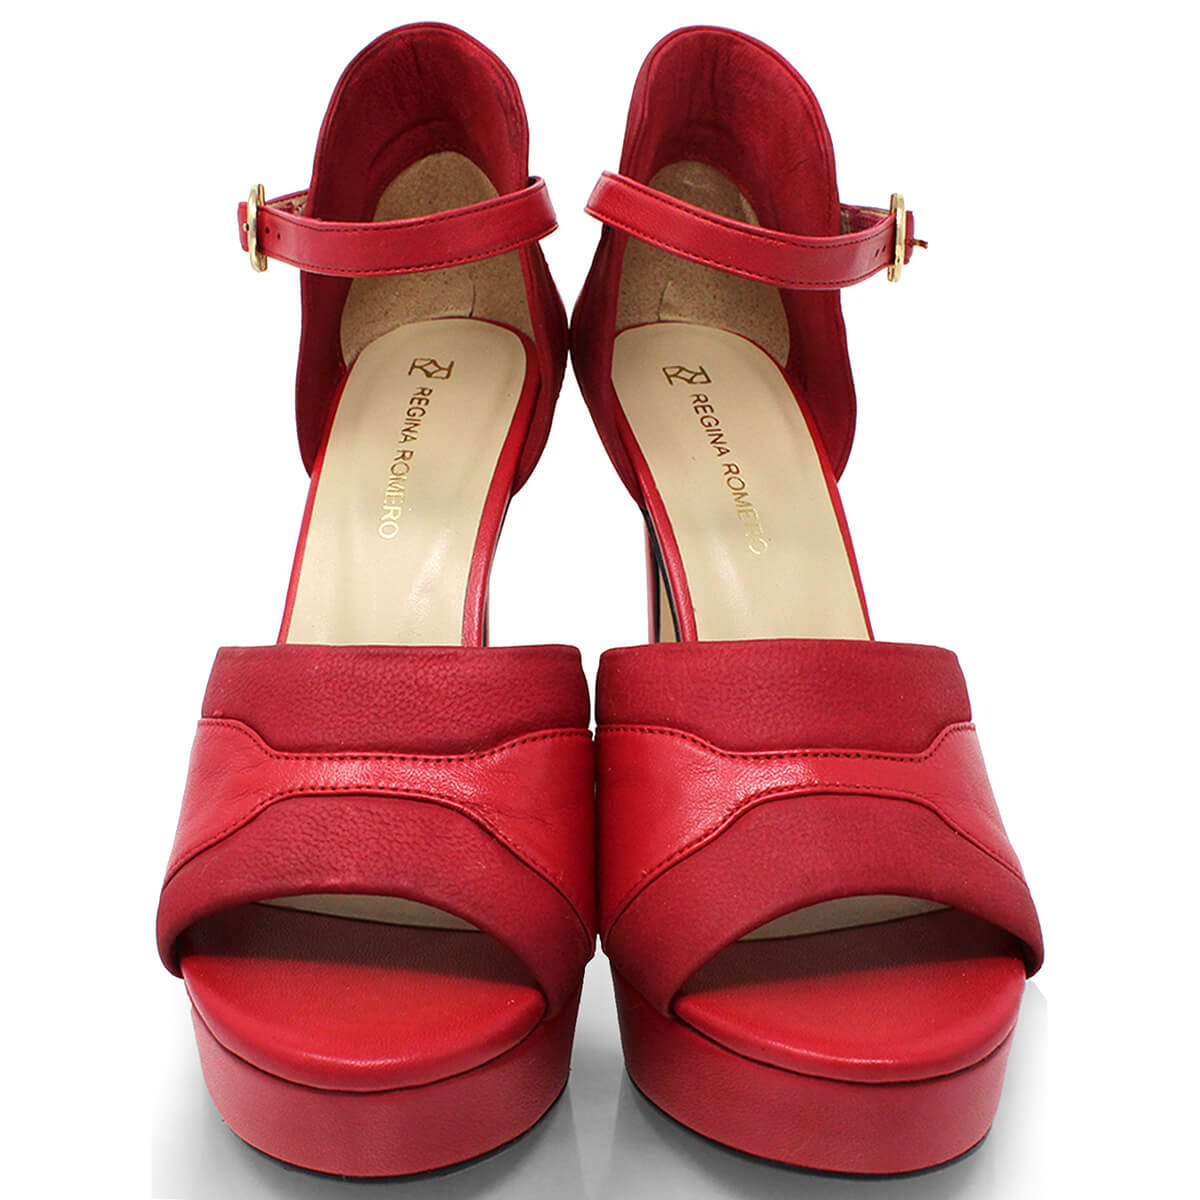 ALAIS 125 - Rojo Regina Romero Zapato Sandalia Plataforma Tacon Alto Para Dama en Piel